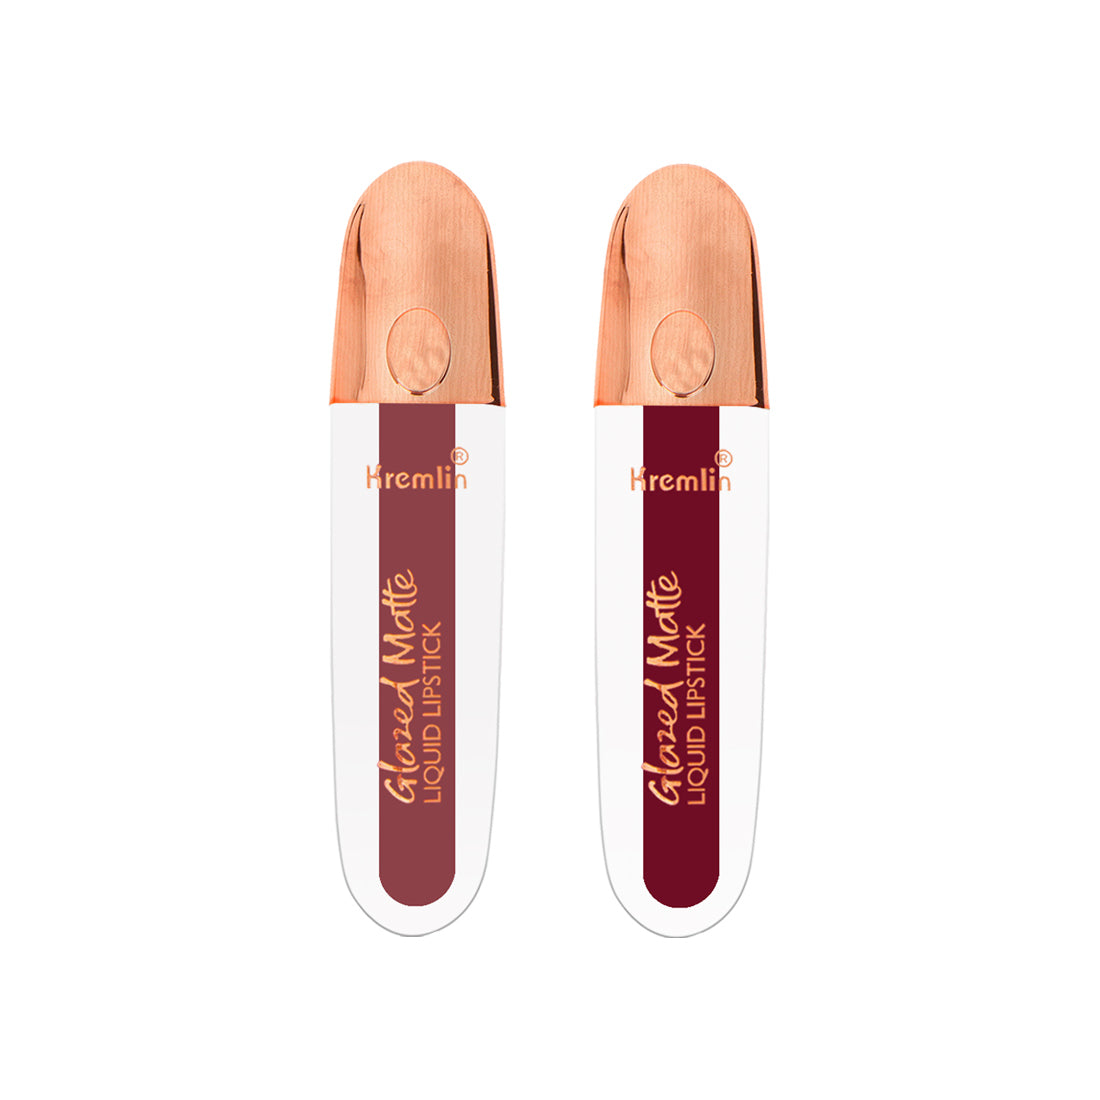 Kremlin Glazed Matte Liquid Lipstick Lips Pack of 2 (Virgin, Holy Berry)